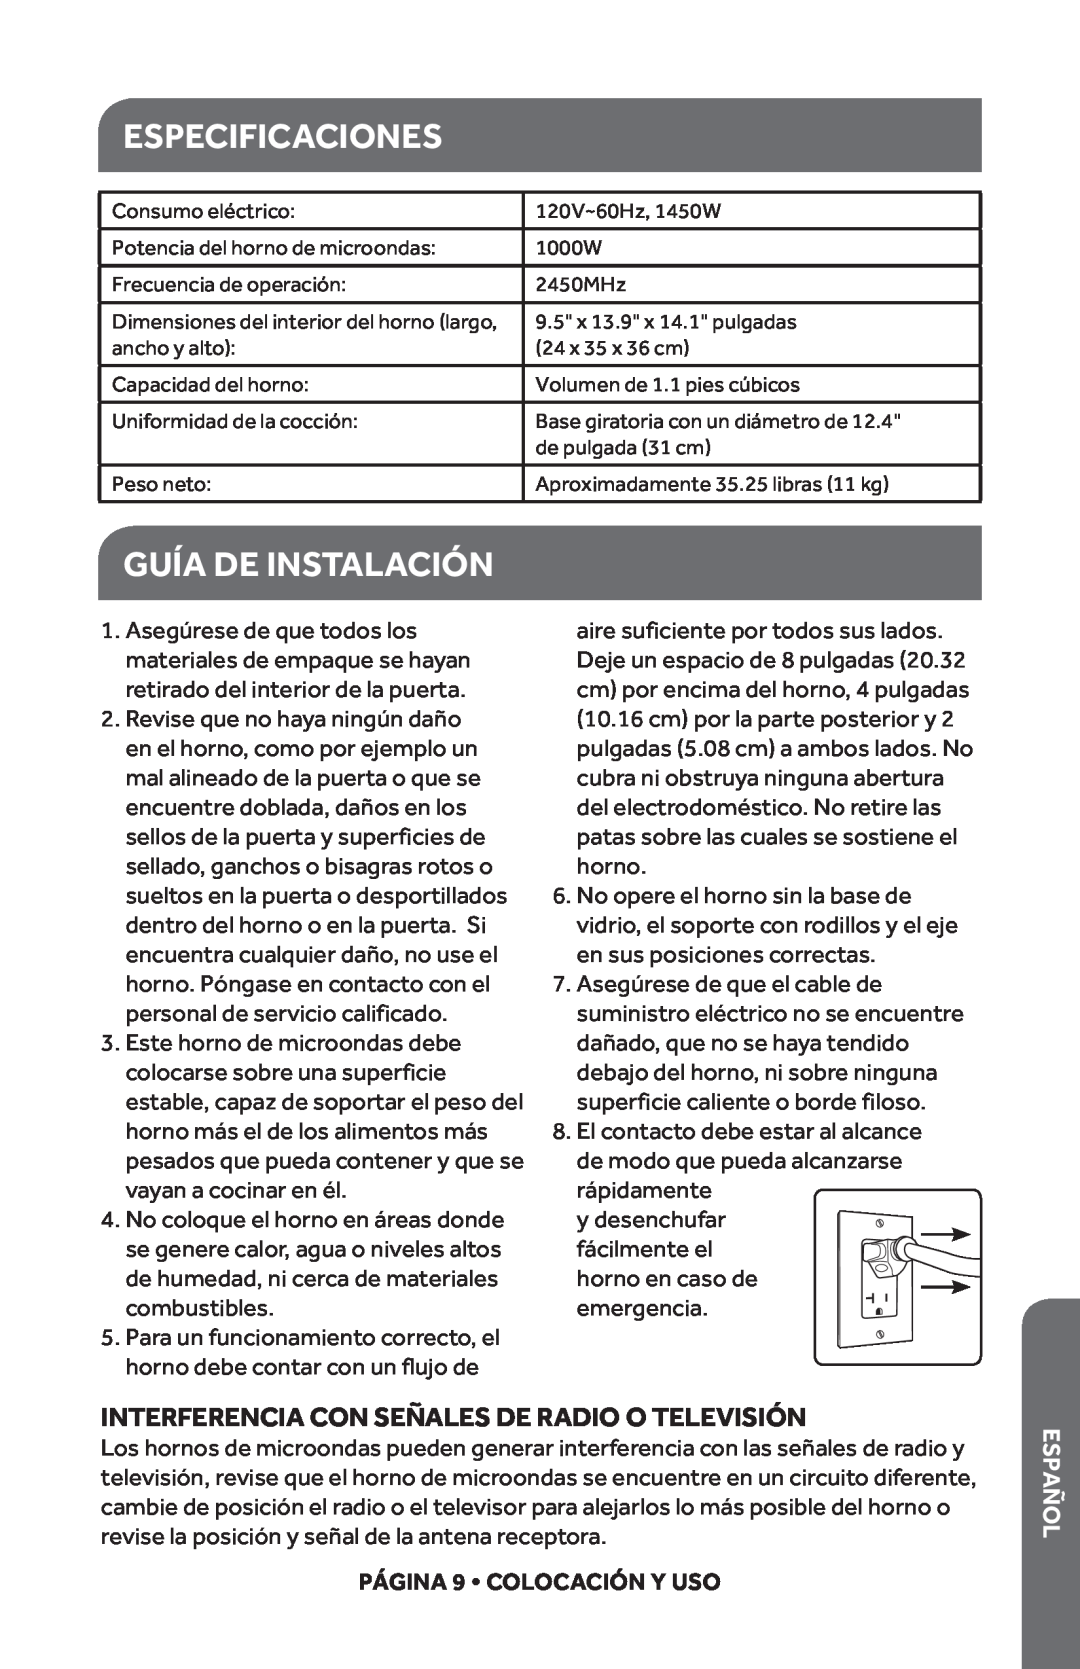 Haier HMC1120BEBB Especificaciones, Guía De Instalación, Interferencia Con Señales De Radio O Televisión, Español 